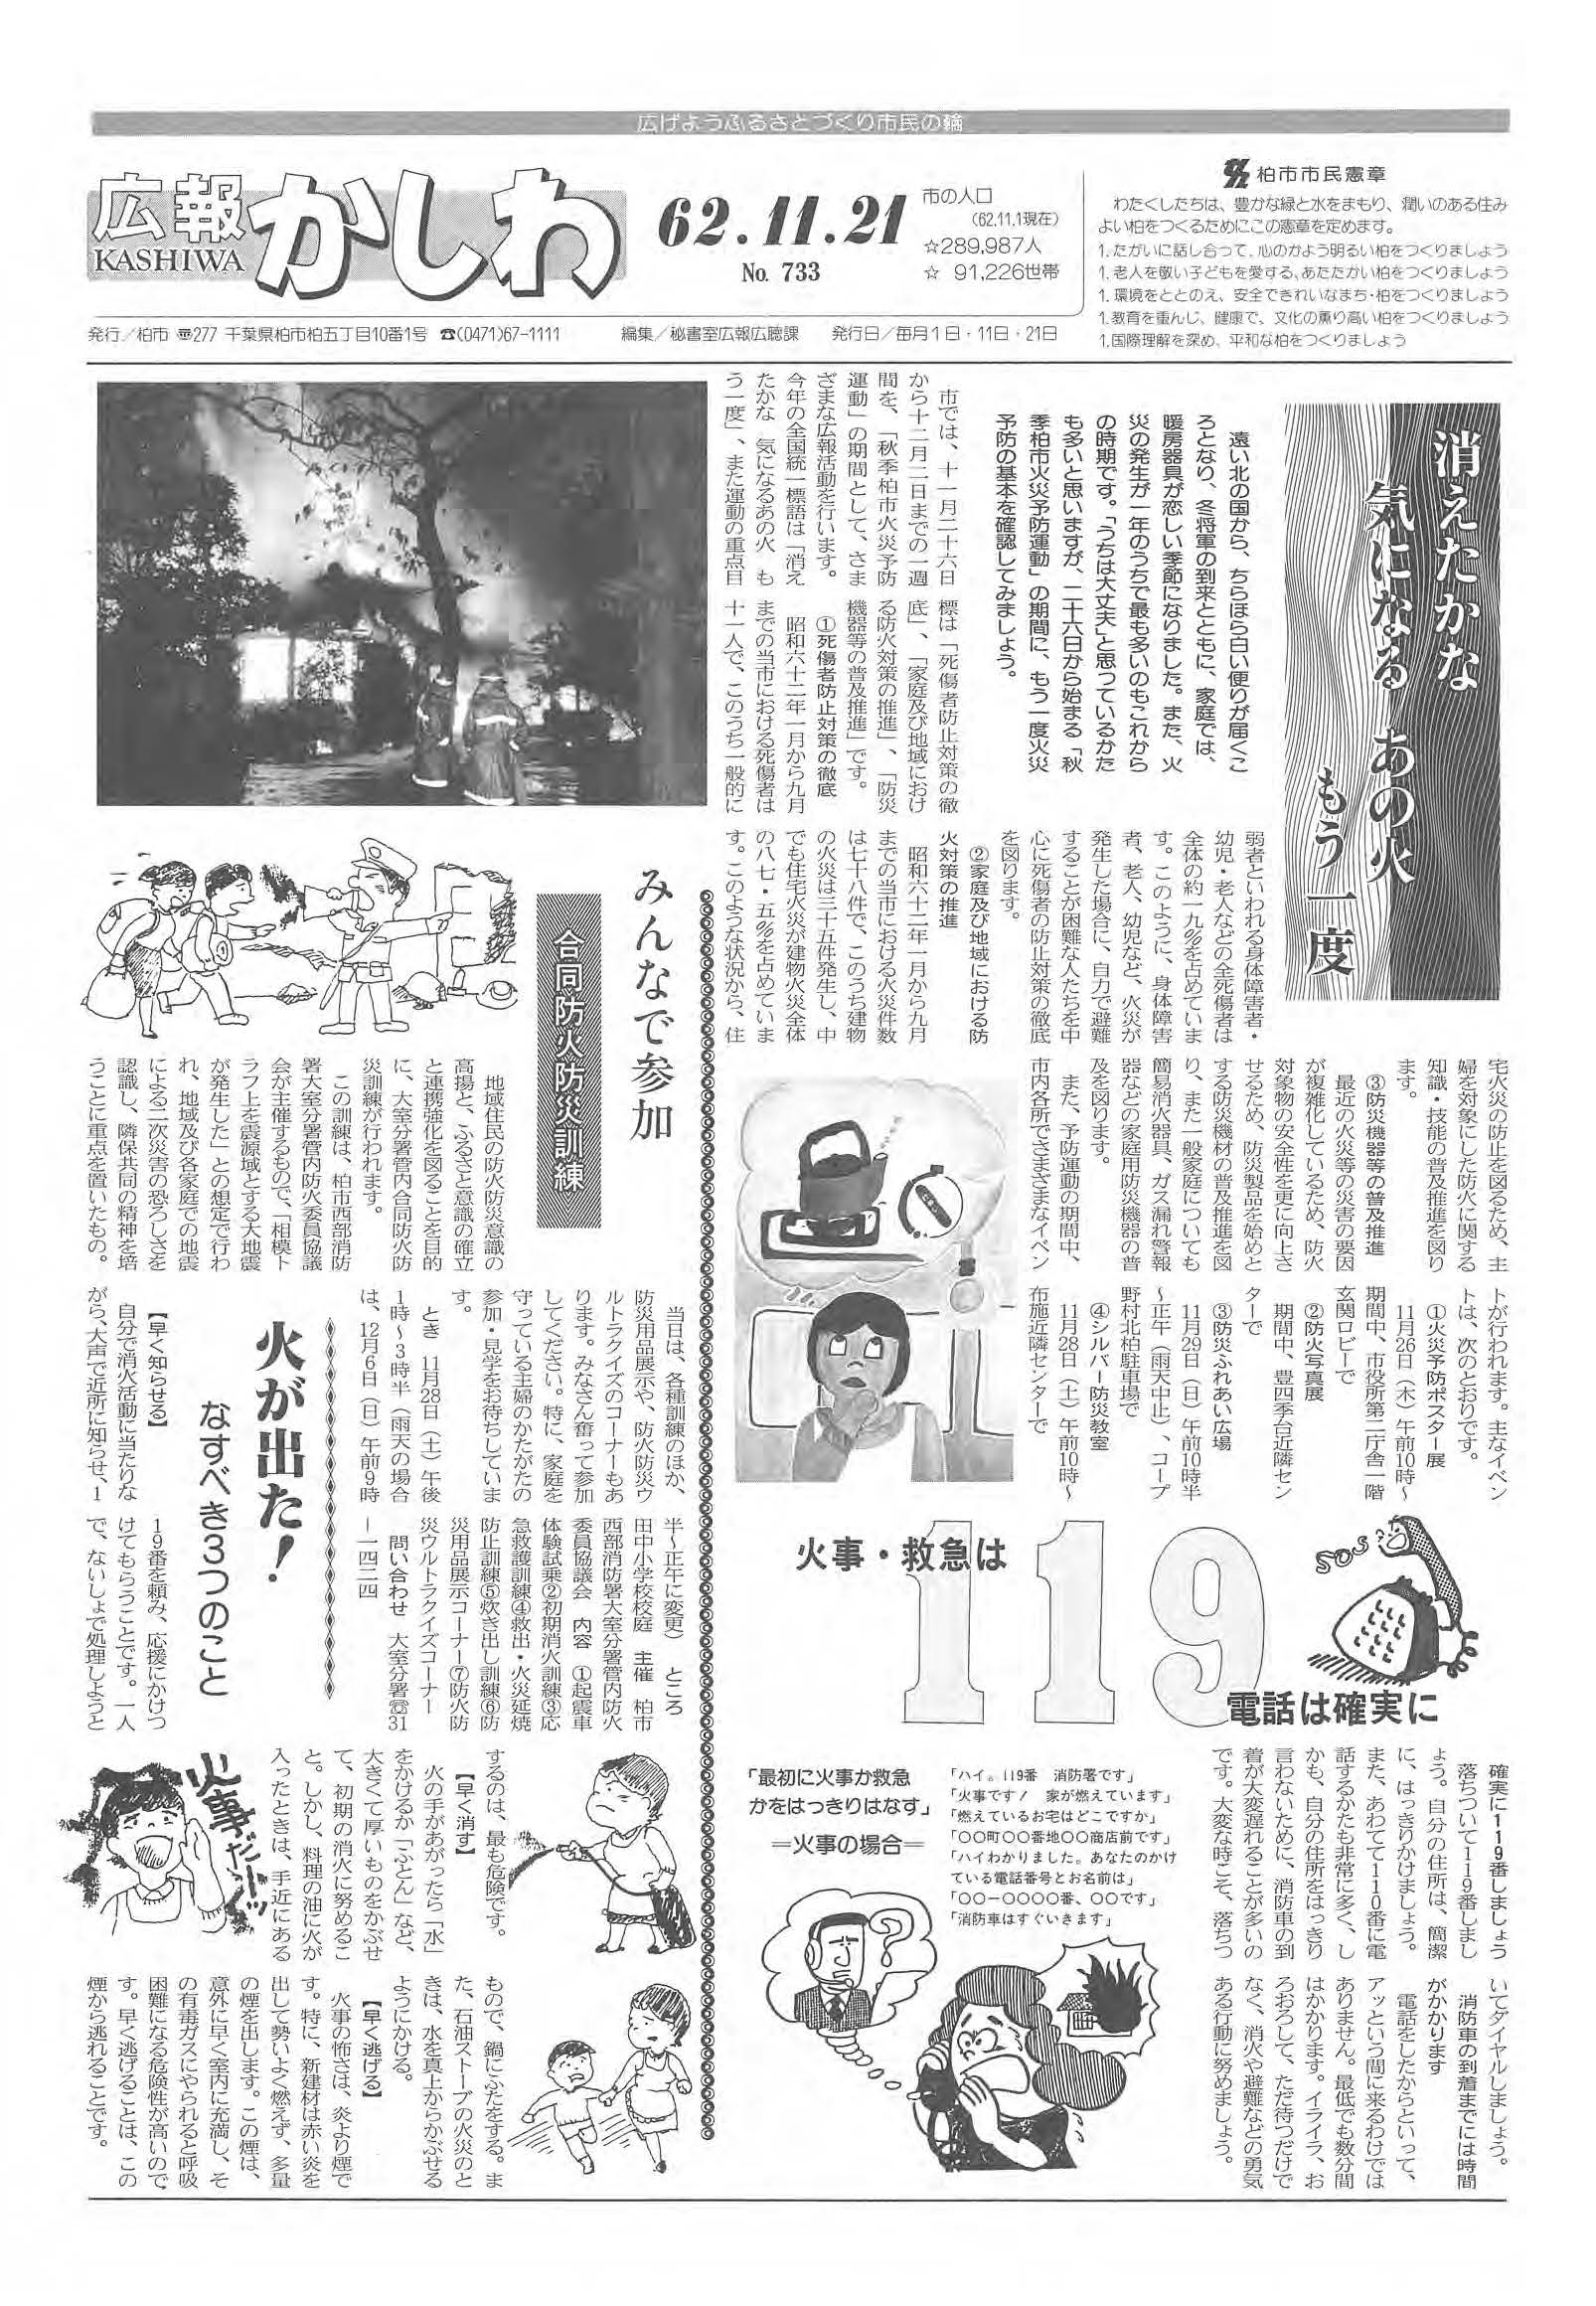 広報かしわ　昭和62年11月21日発行　733号